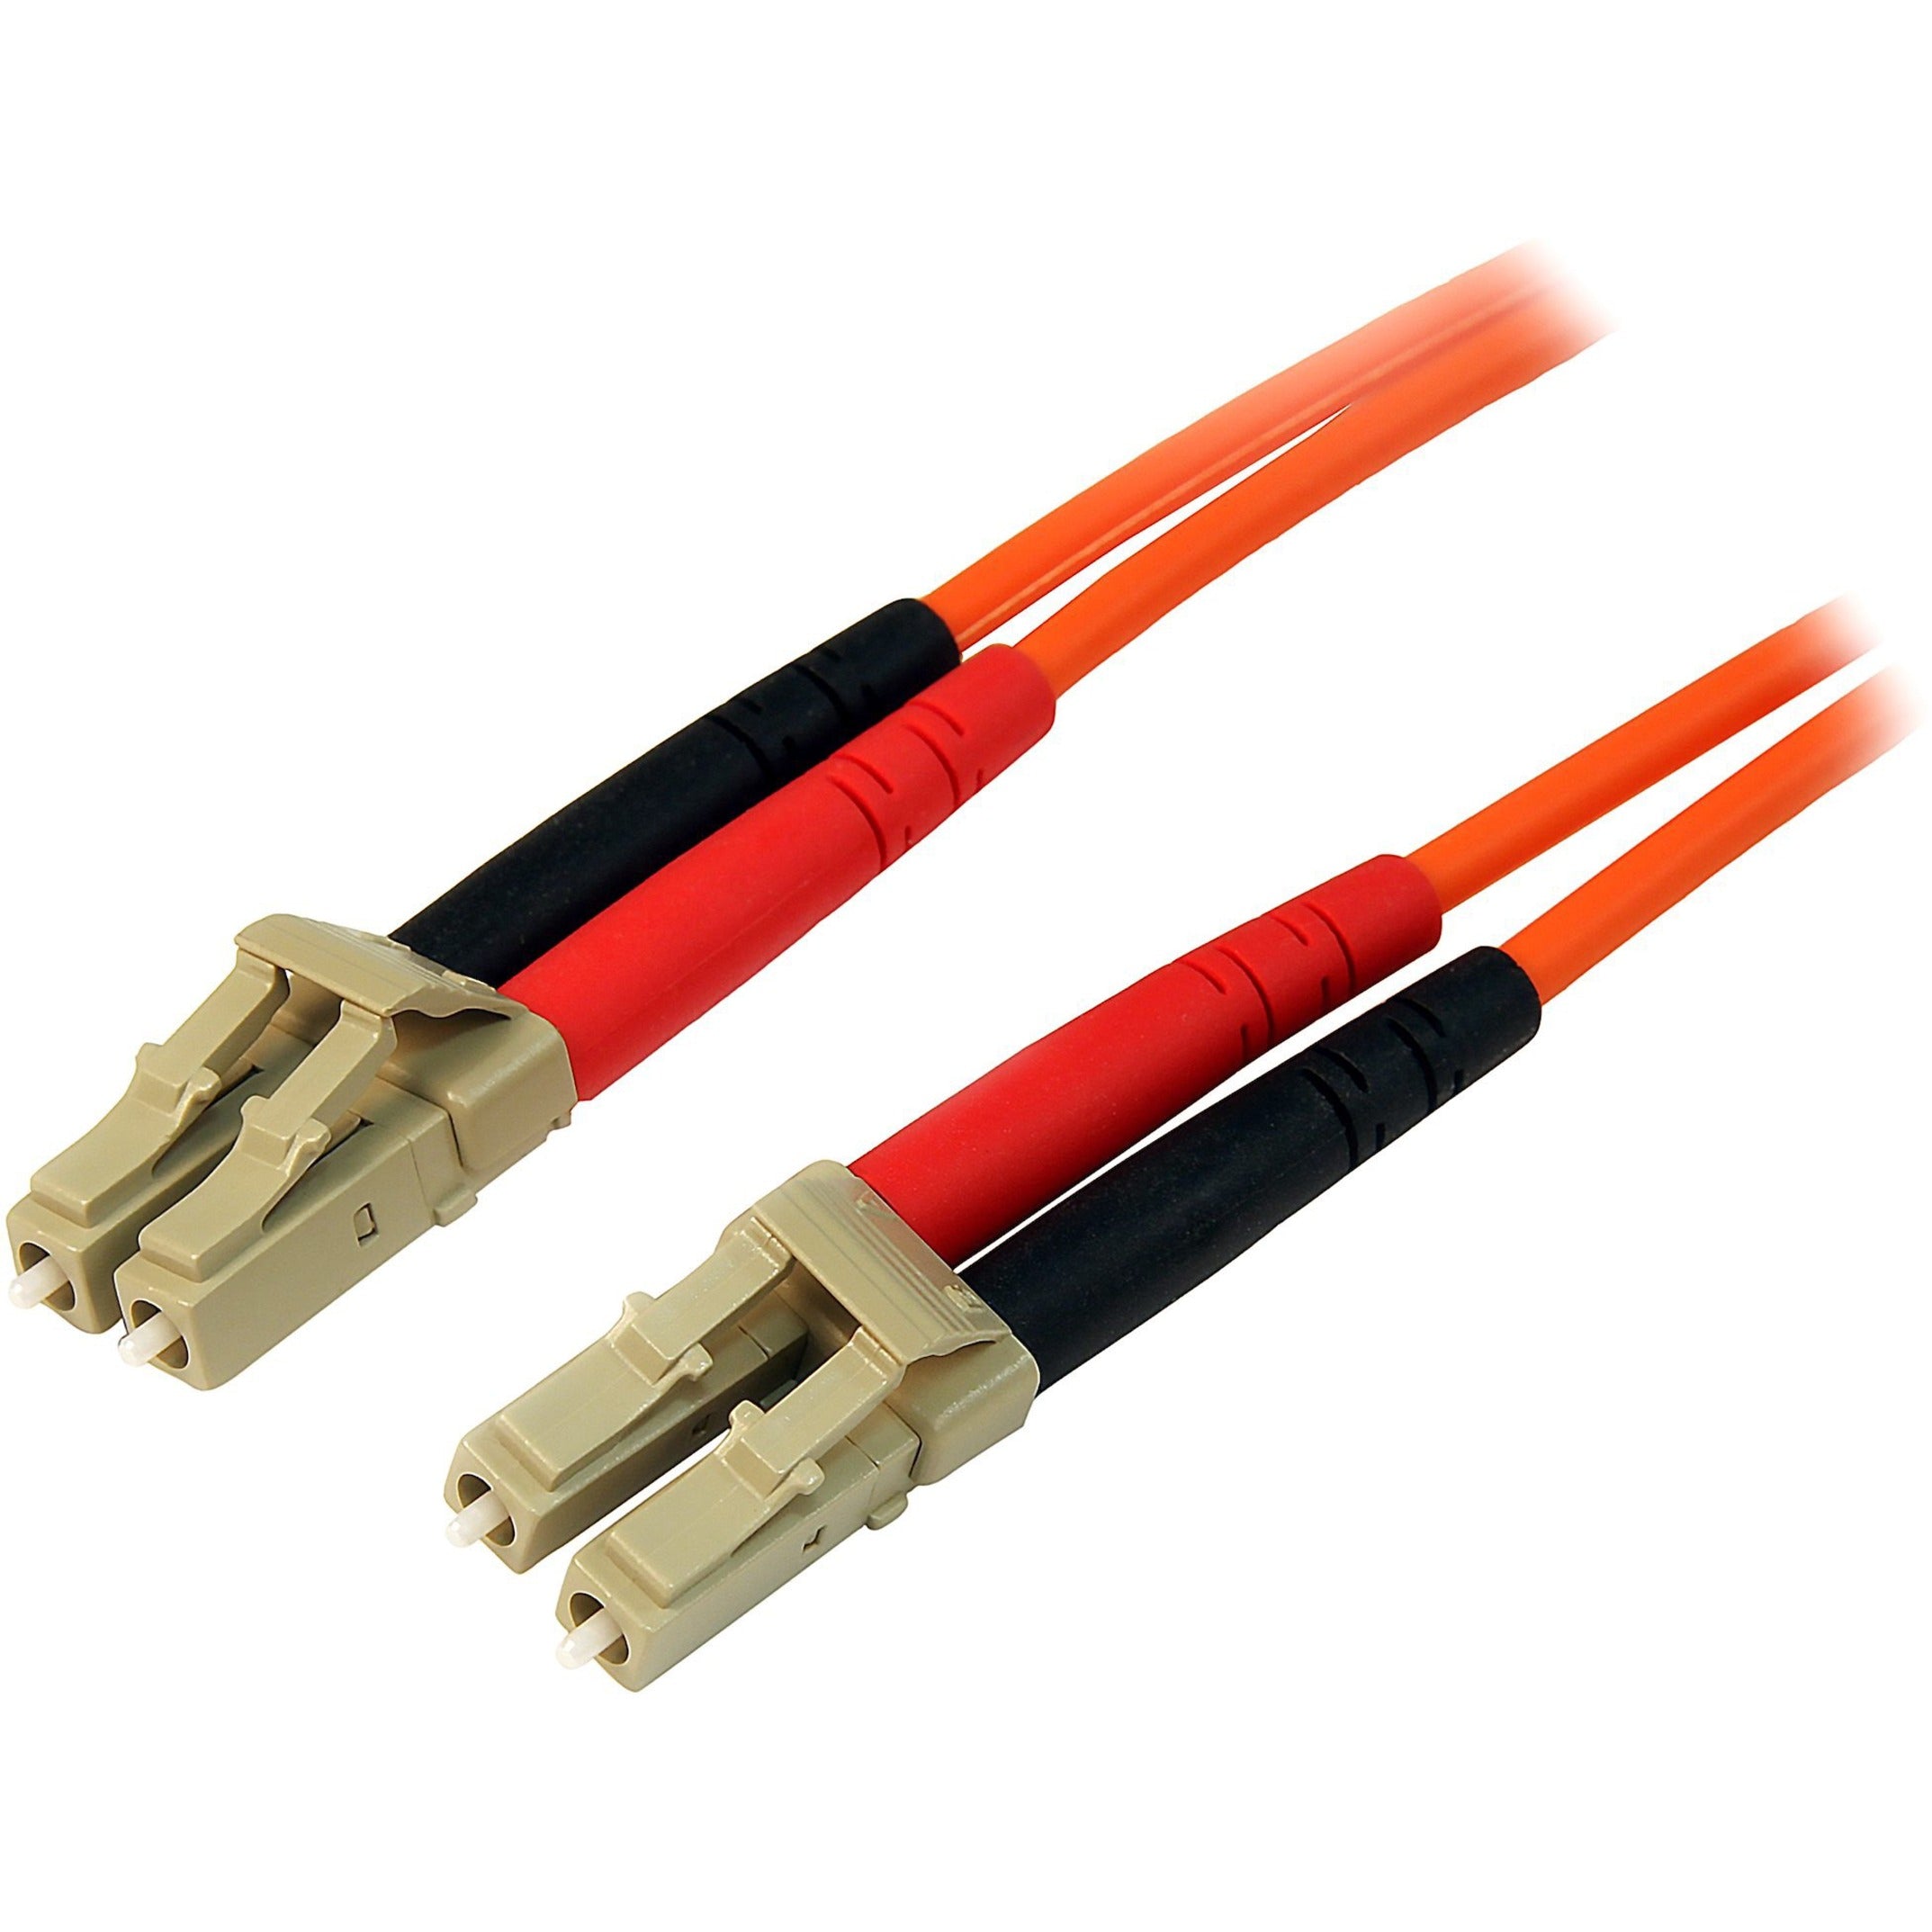 星科（StarTech.com）  光纤补丁电缆 LC - LC，10 Gbit/s 数据传输速率，橙色